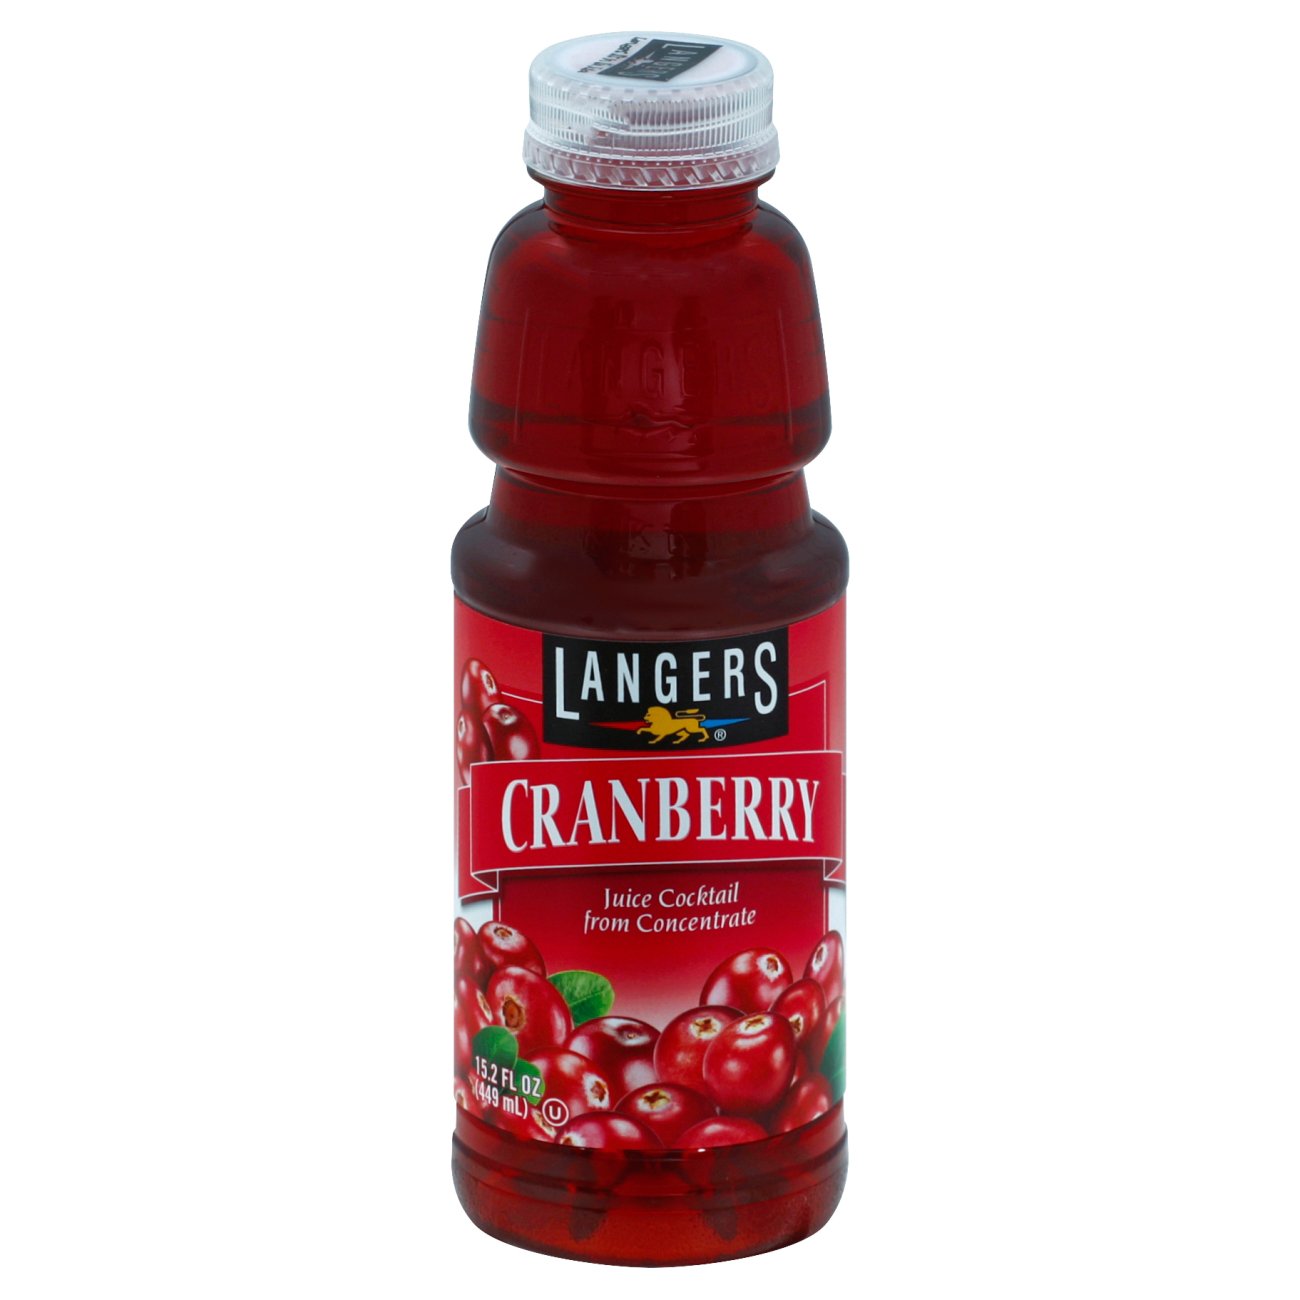 Langers Cranberry Juice Cocktail - Shop Juice at H-E-B